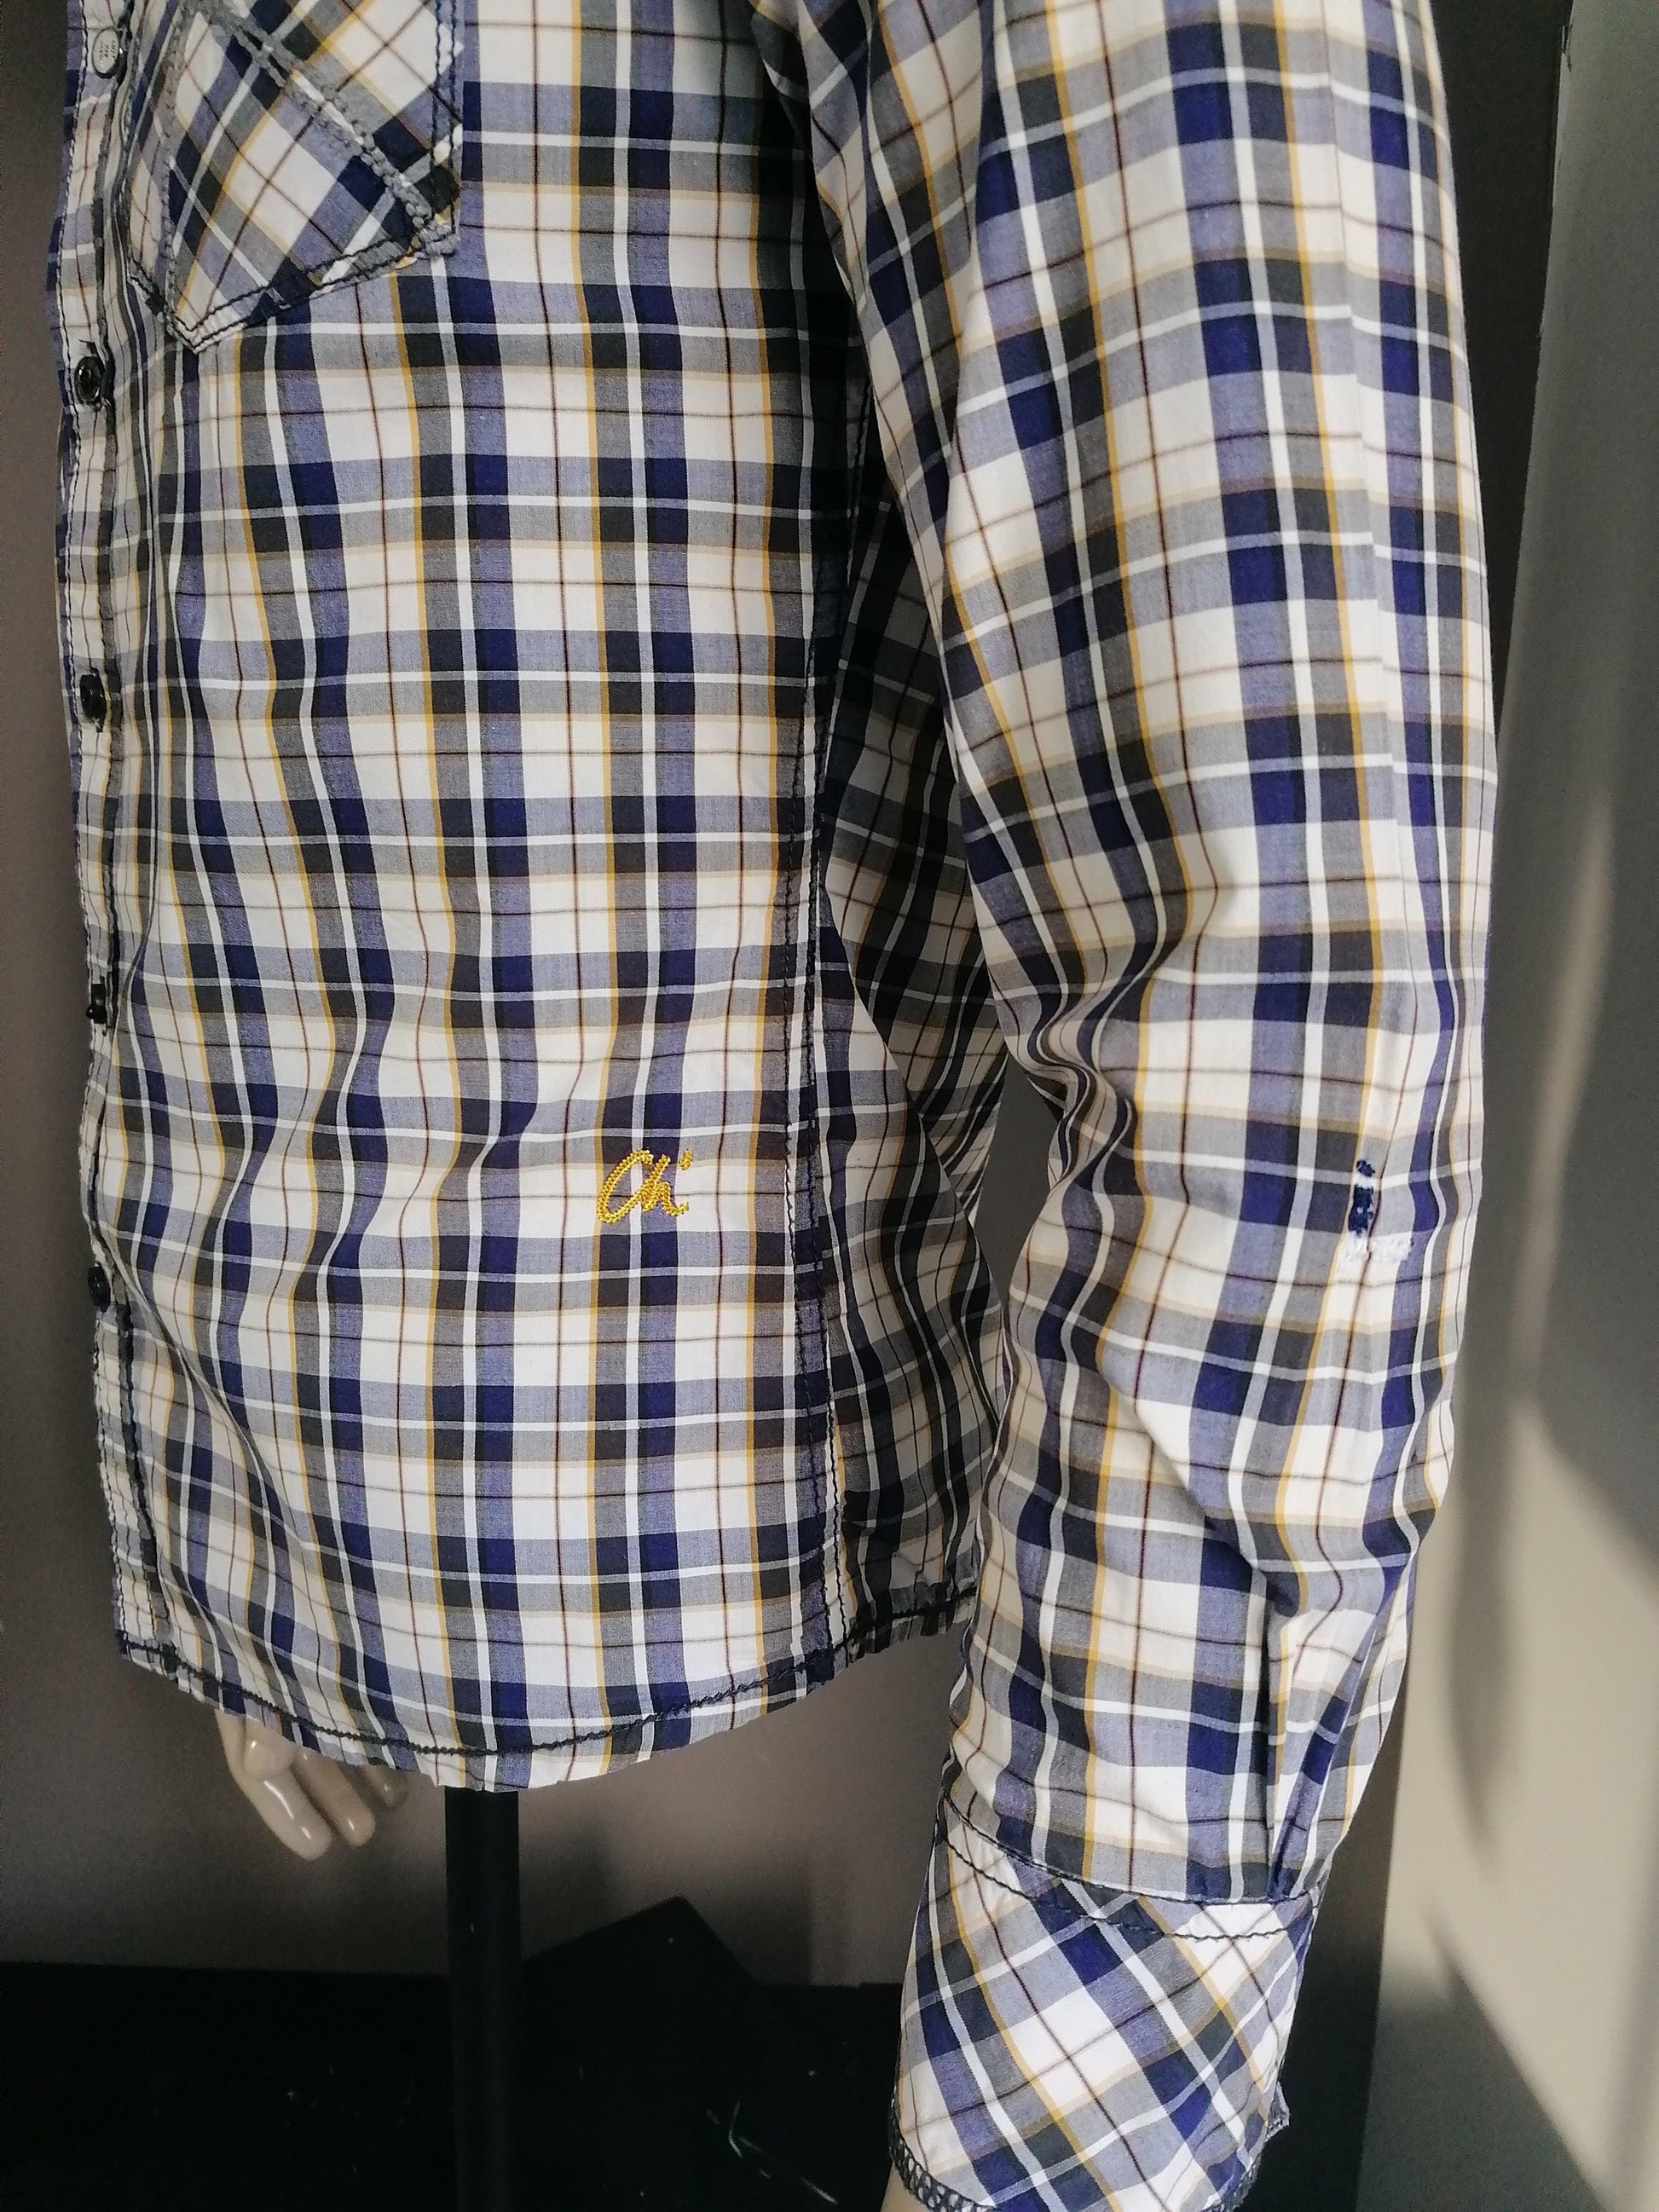 B keus: Chasin overhemd. Paars Wit Geel. Maat M / S. gaatje - EcoGents